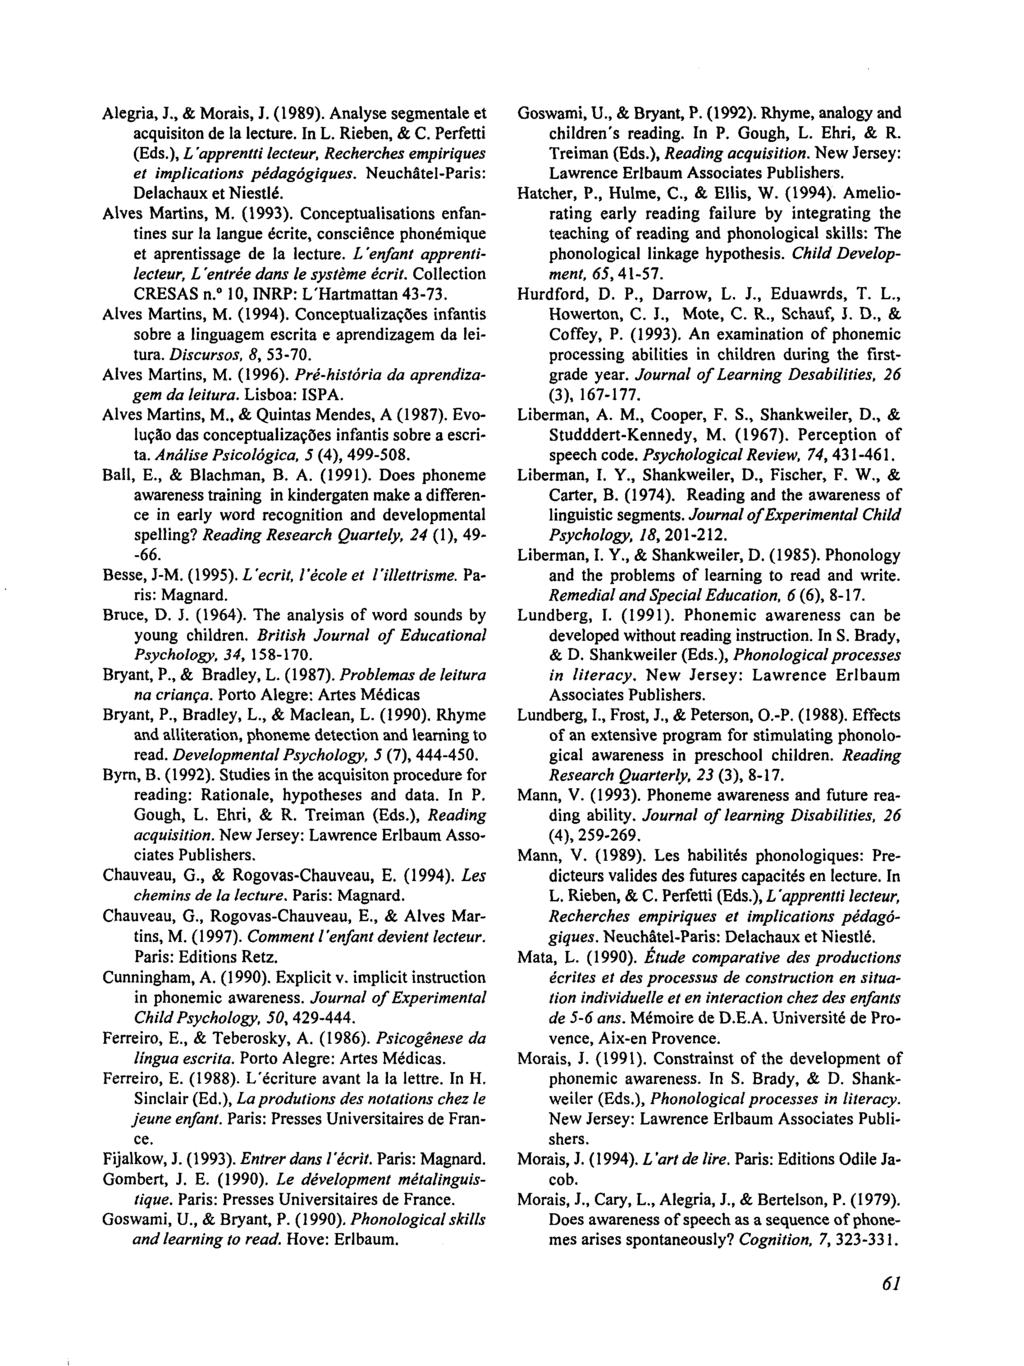 Alegria, J., & Morais, J. (1989). Analyse segmentale et acquisiton de Ia lecture. In L. Rieben, & C. Perfetti (Eds.), L 'apprentti lecteur, Recherches empiriques et implications pédagógiques.